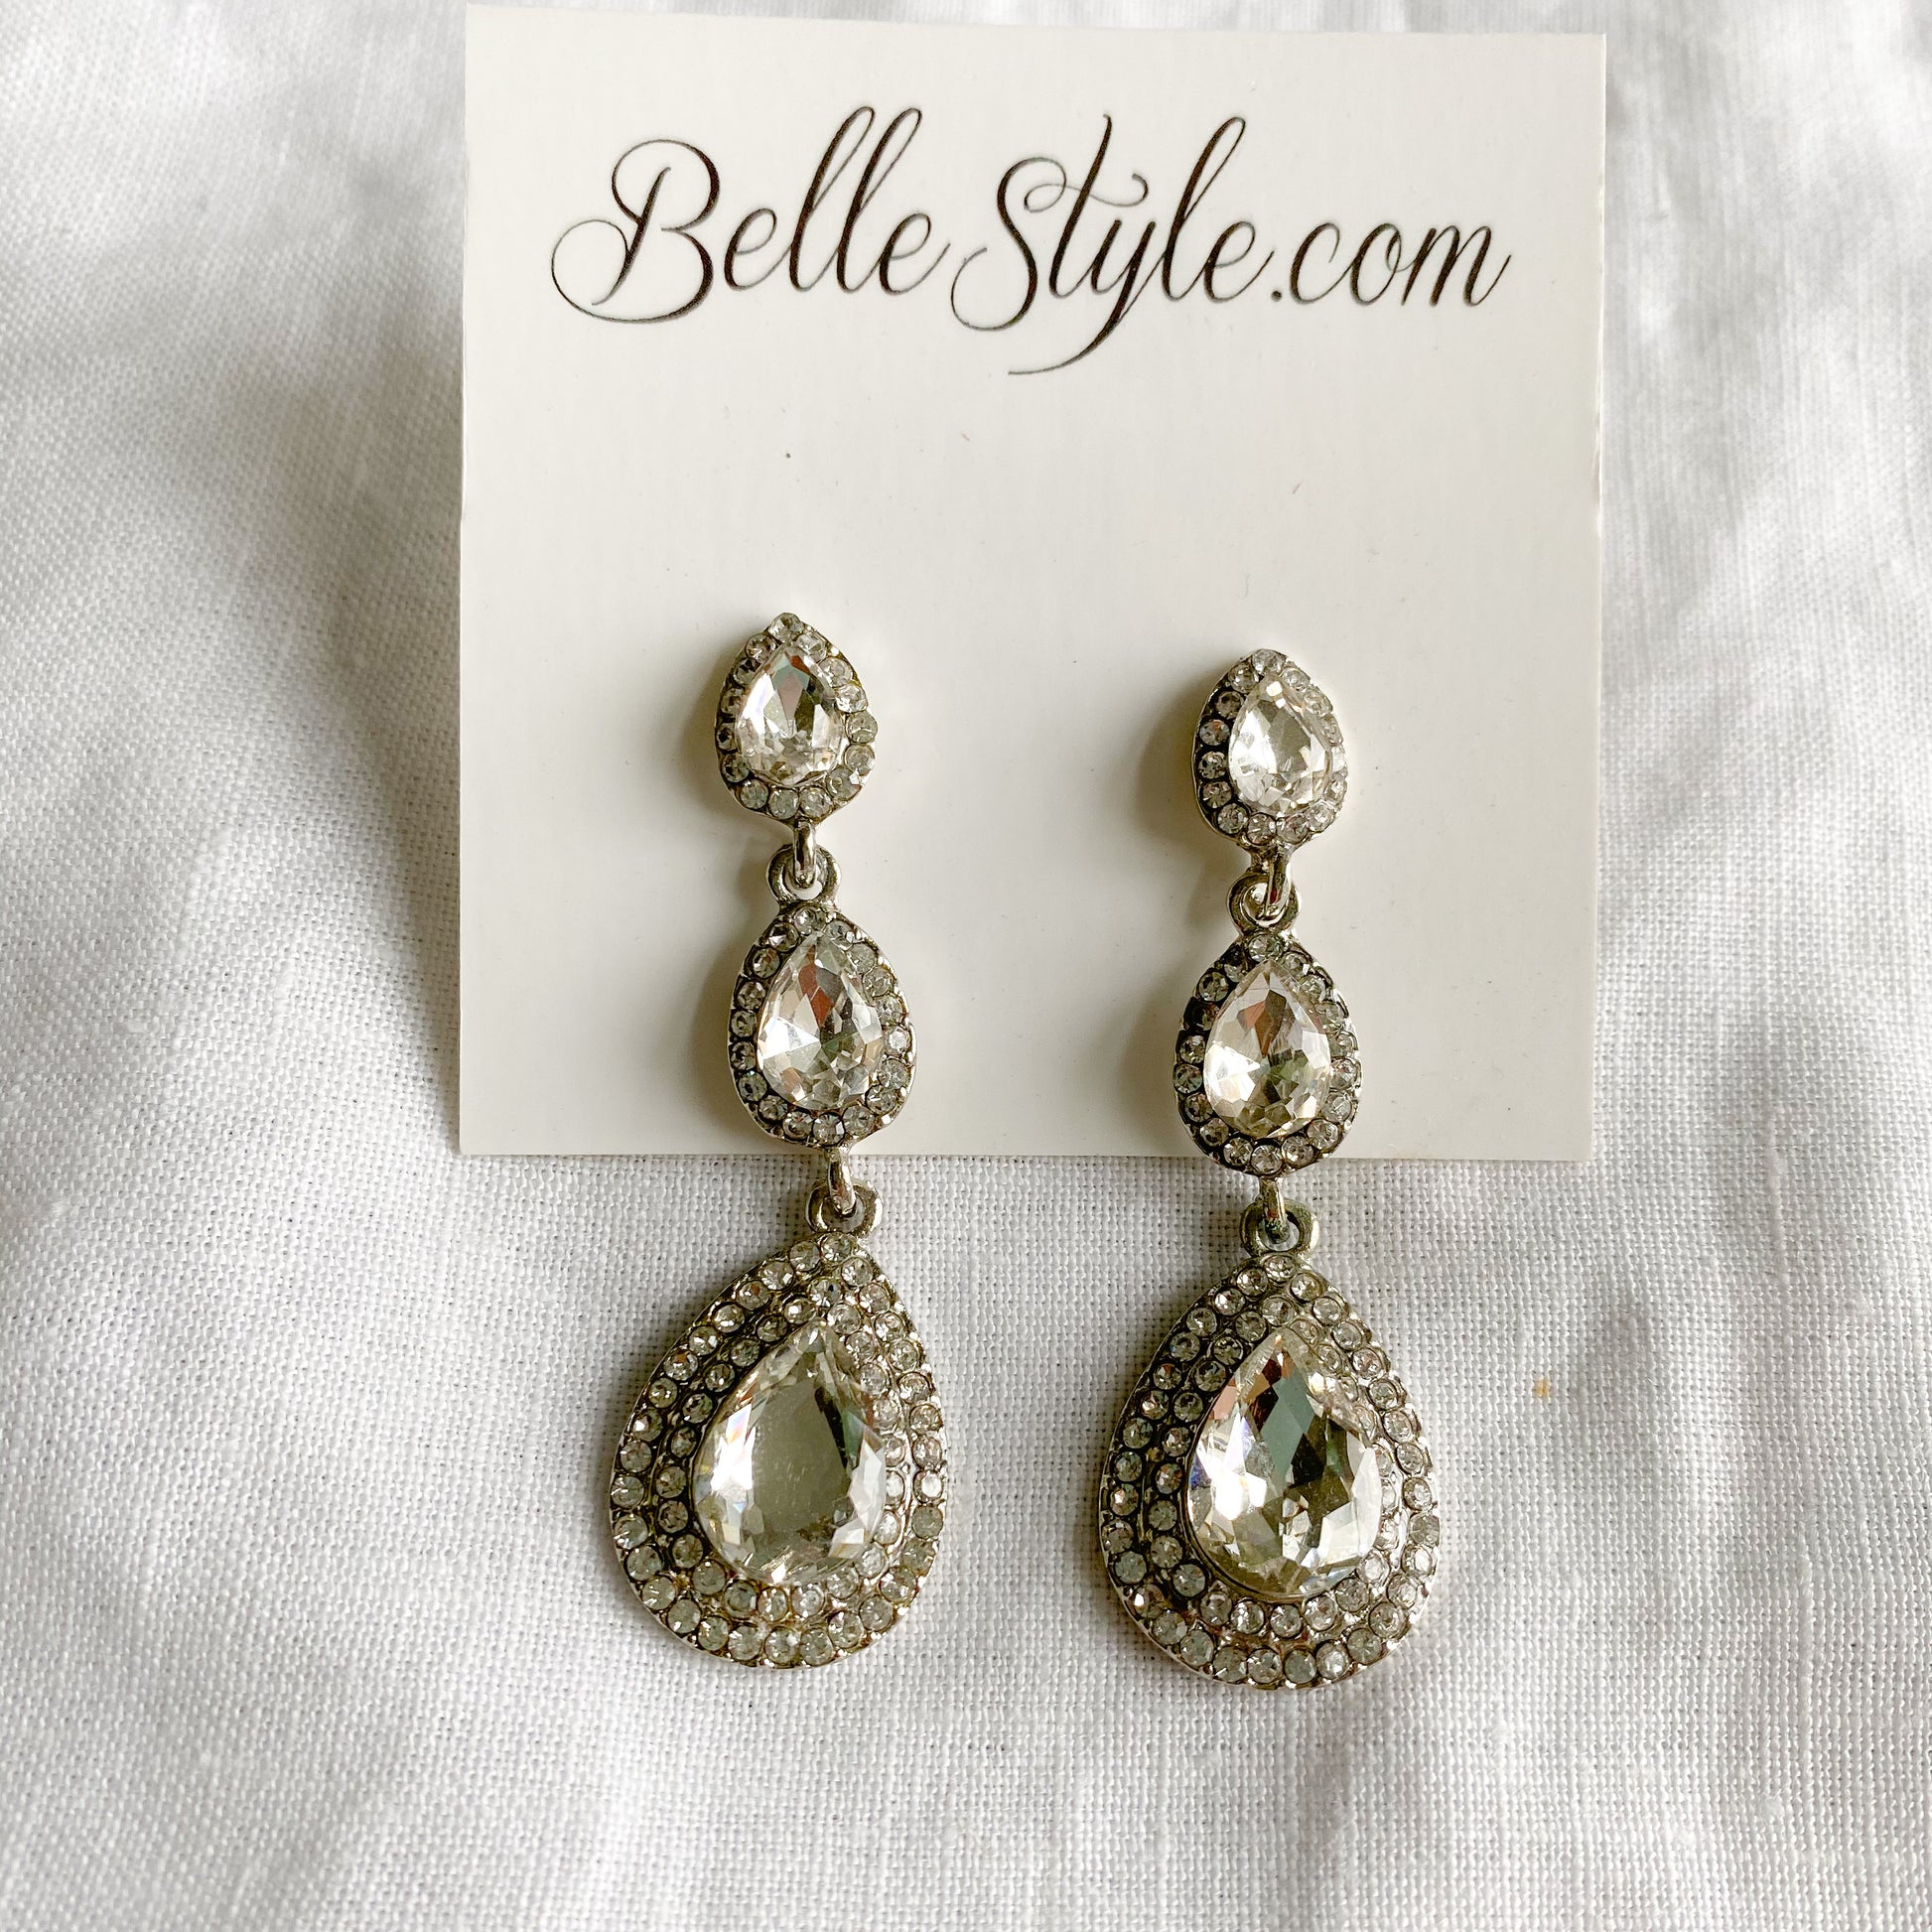 Betty Earrings - BelleStyle - silver gold crystal teardrop post studs